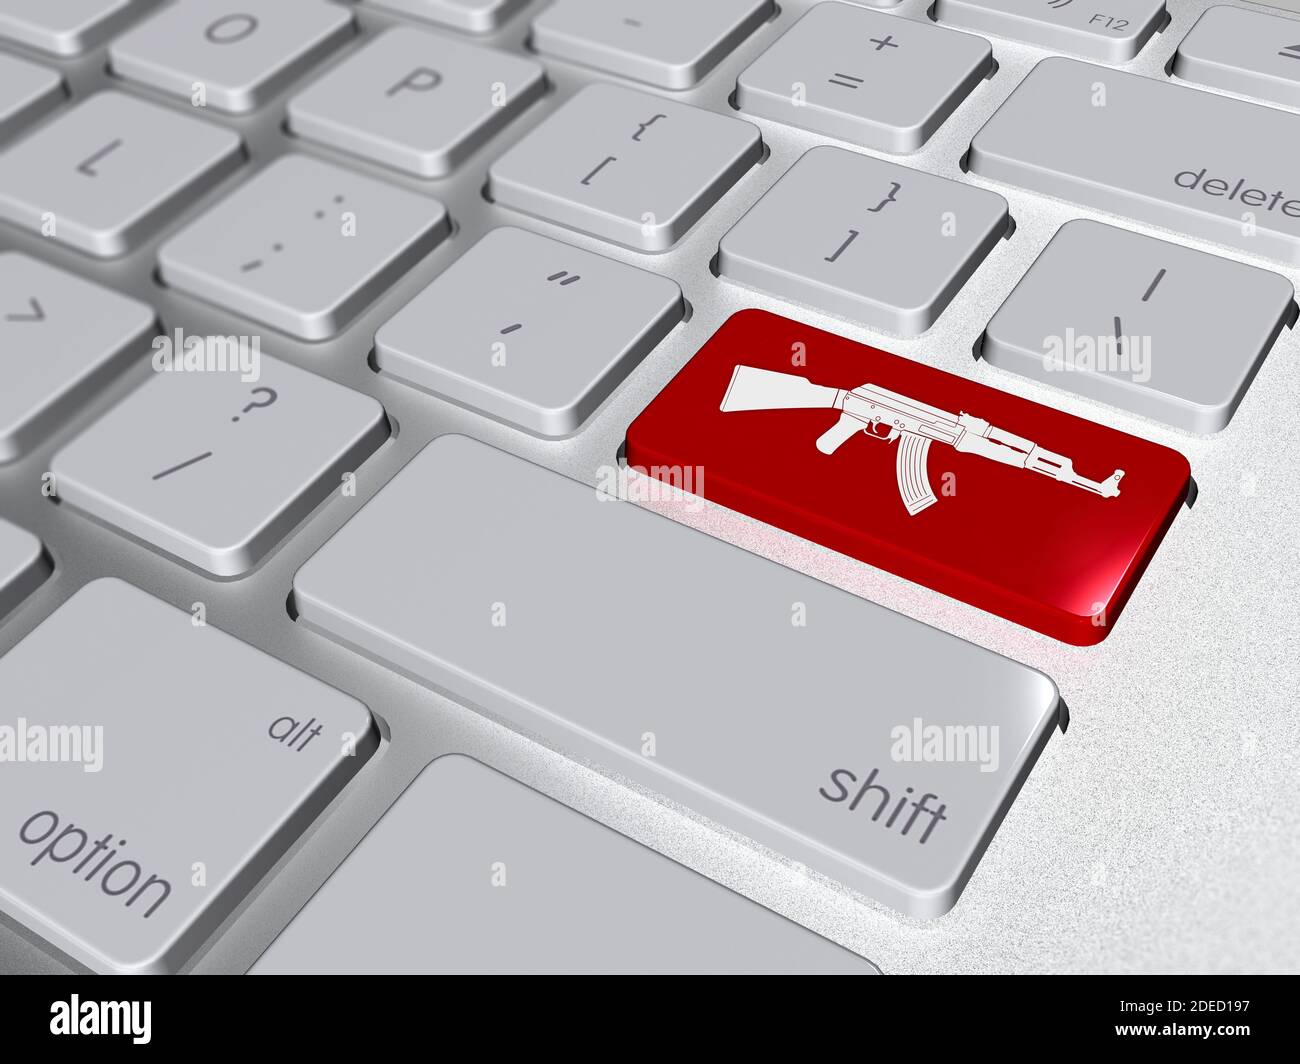 Rote Taste Enter auf der Computer-Tastatur mit Gewehr-Symbol, 3d-Abbildung Stockfoto